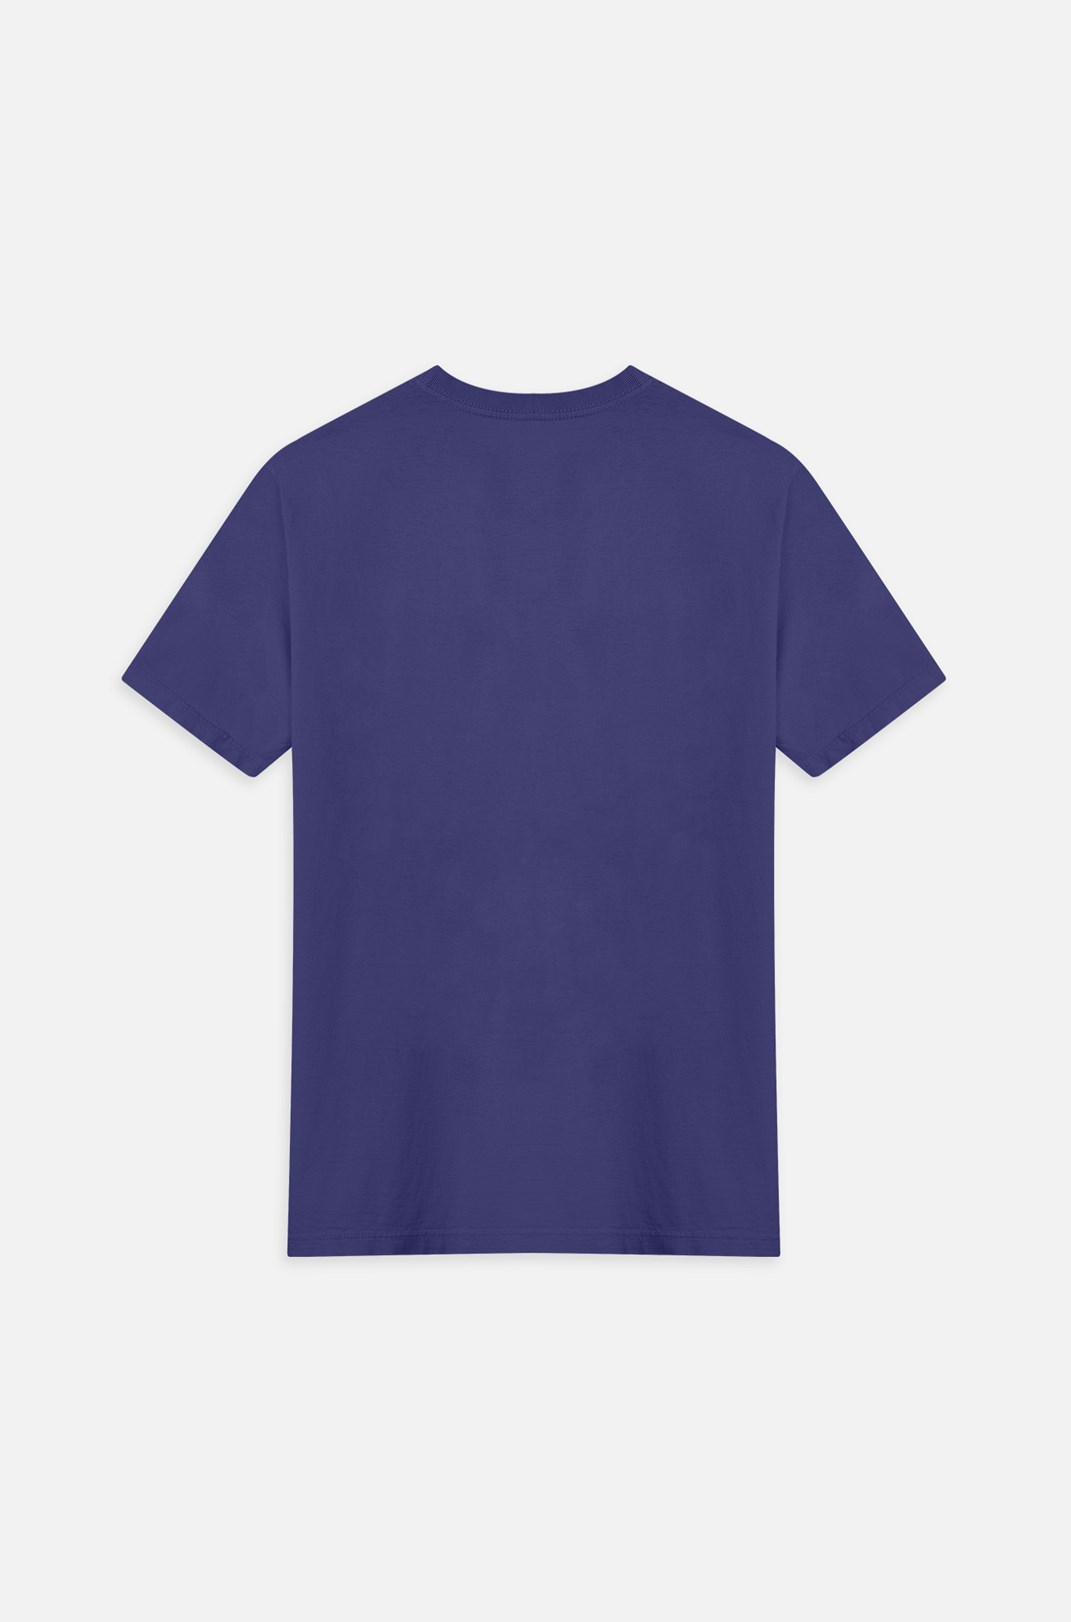 Camiseta Bold Approve Big Logo Azul Marinho e Branca